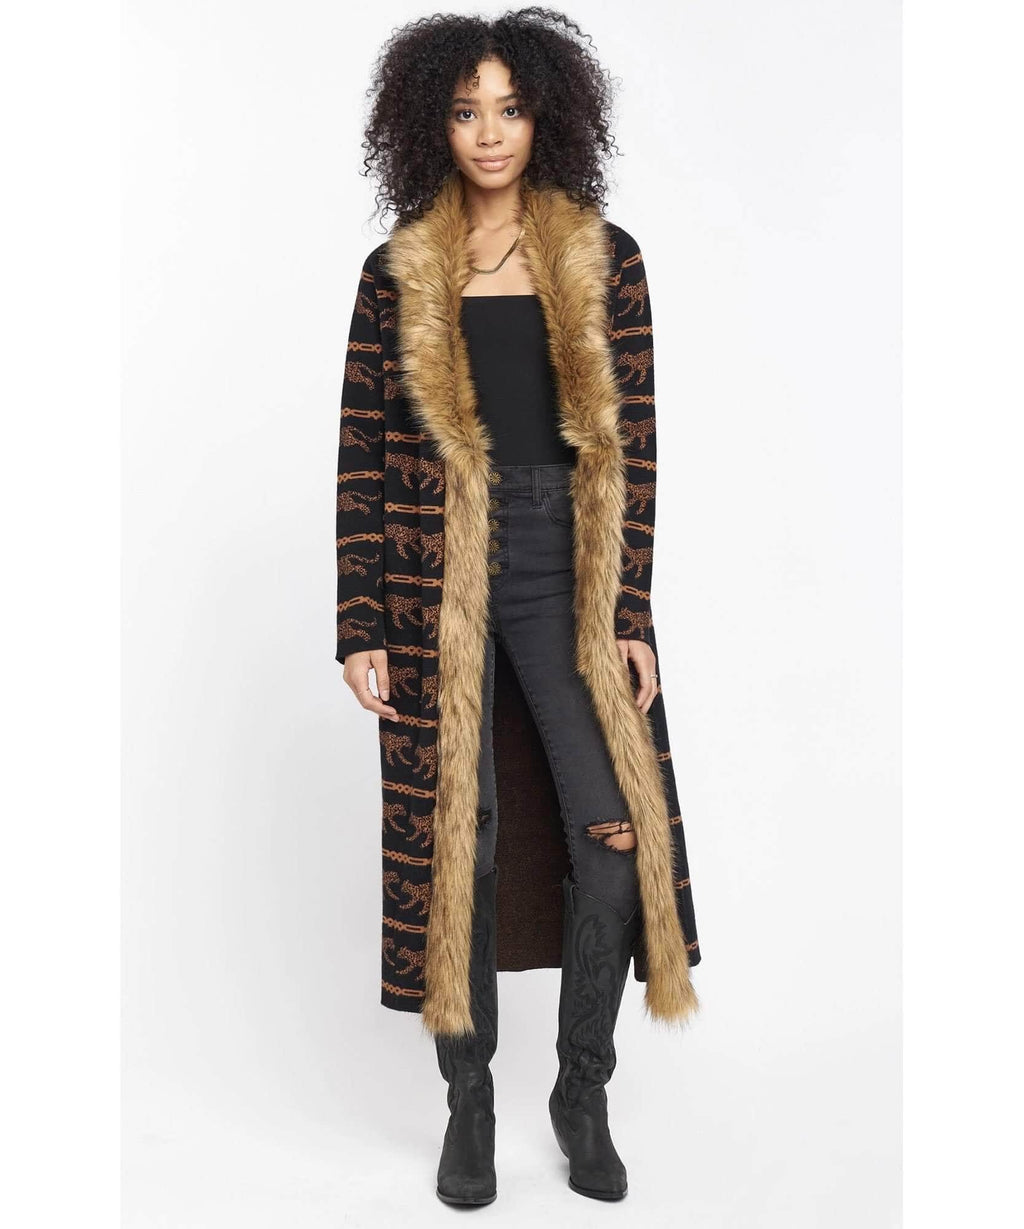 Langston Cardigan Cheetah Chains Knit w/Faux Fur – PINK ARROWS